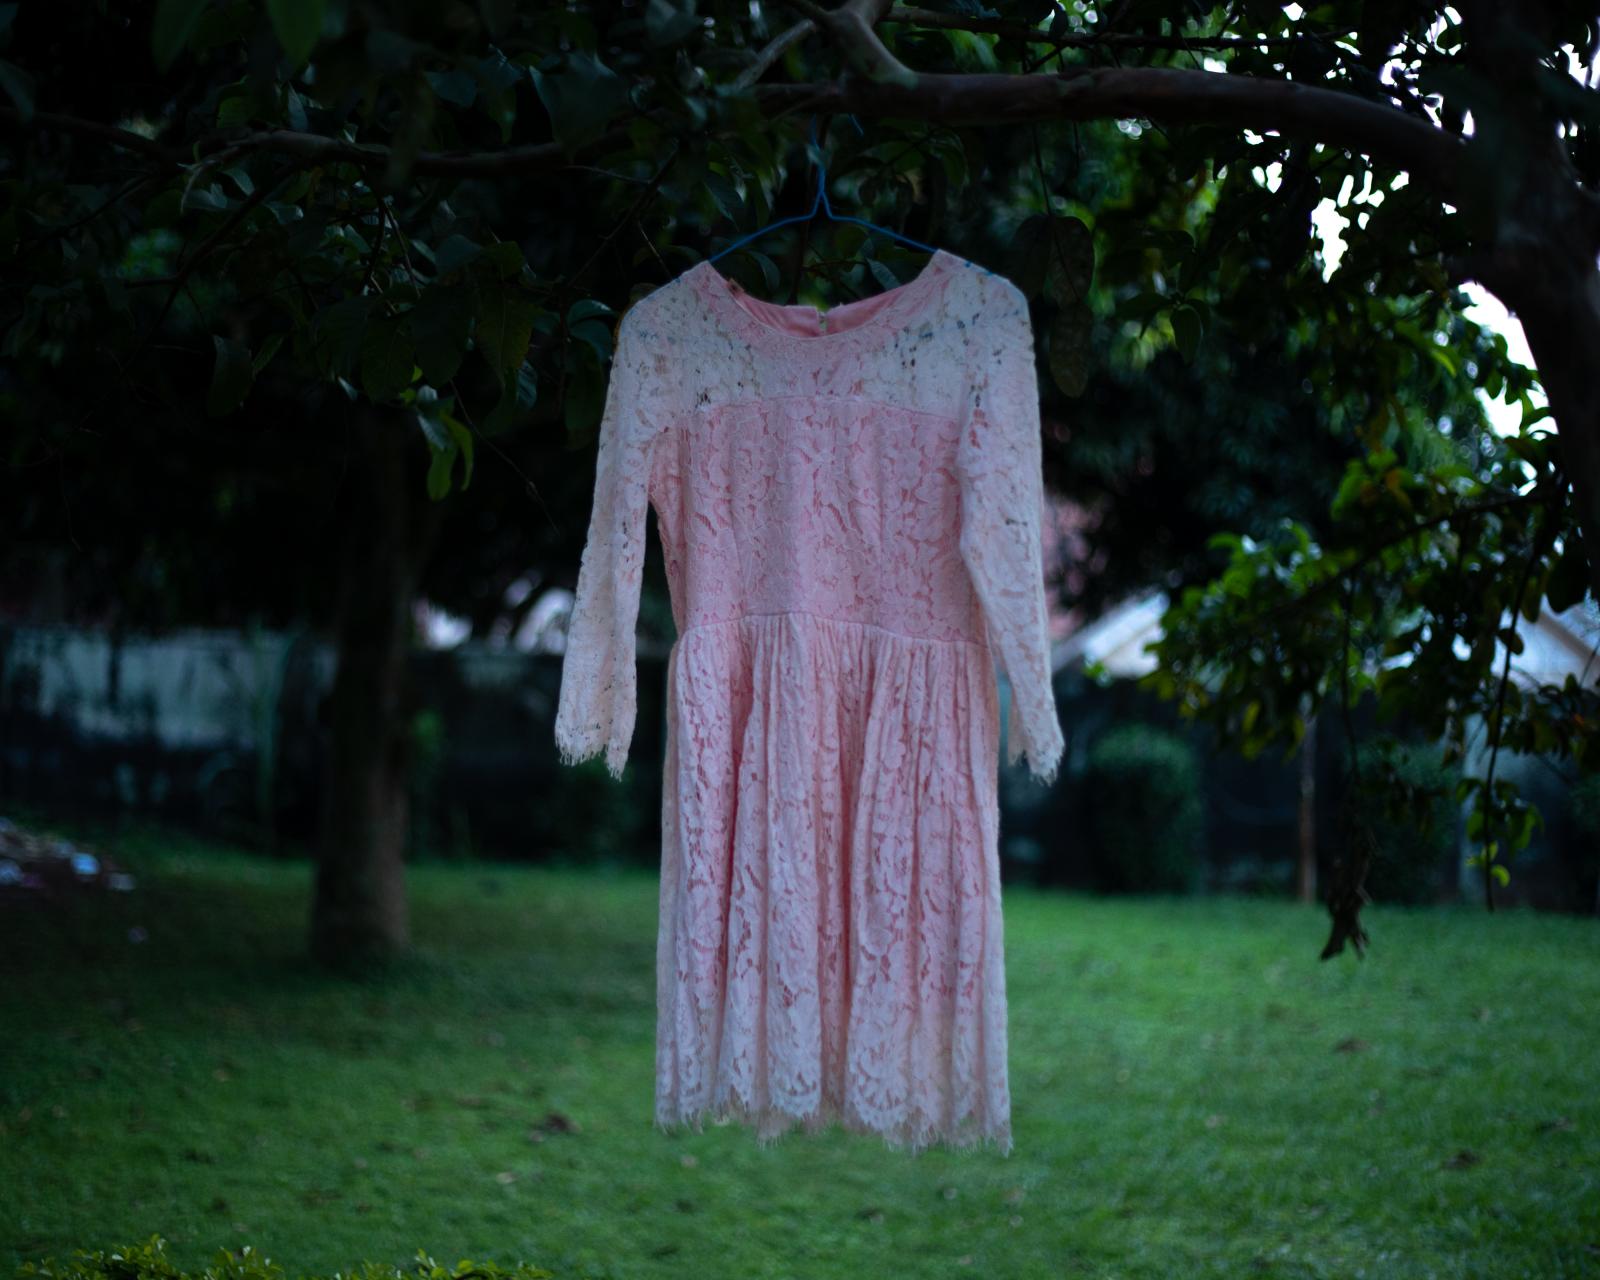 Surviving Bery: A Girlhood Trauma | DeLovie Kwagala  - “I feel like a grown up wearing this dress. He...